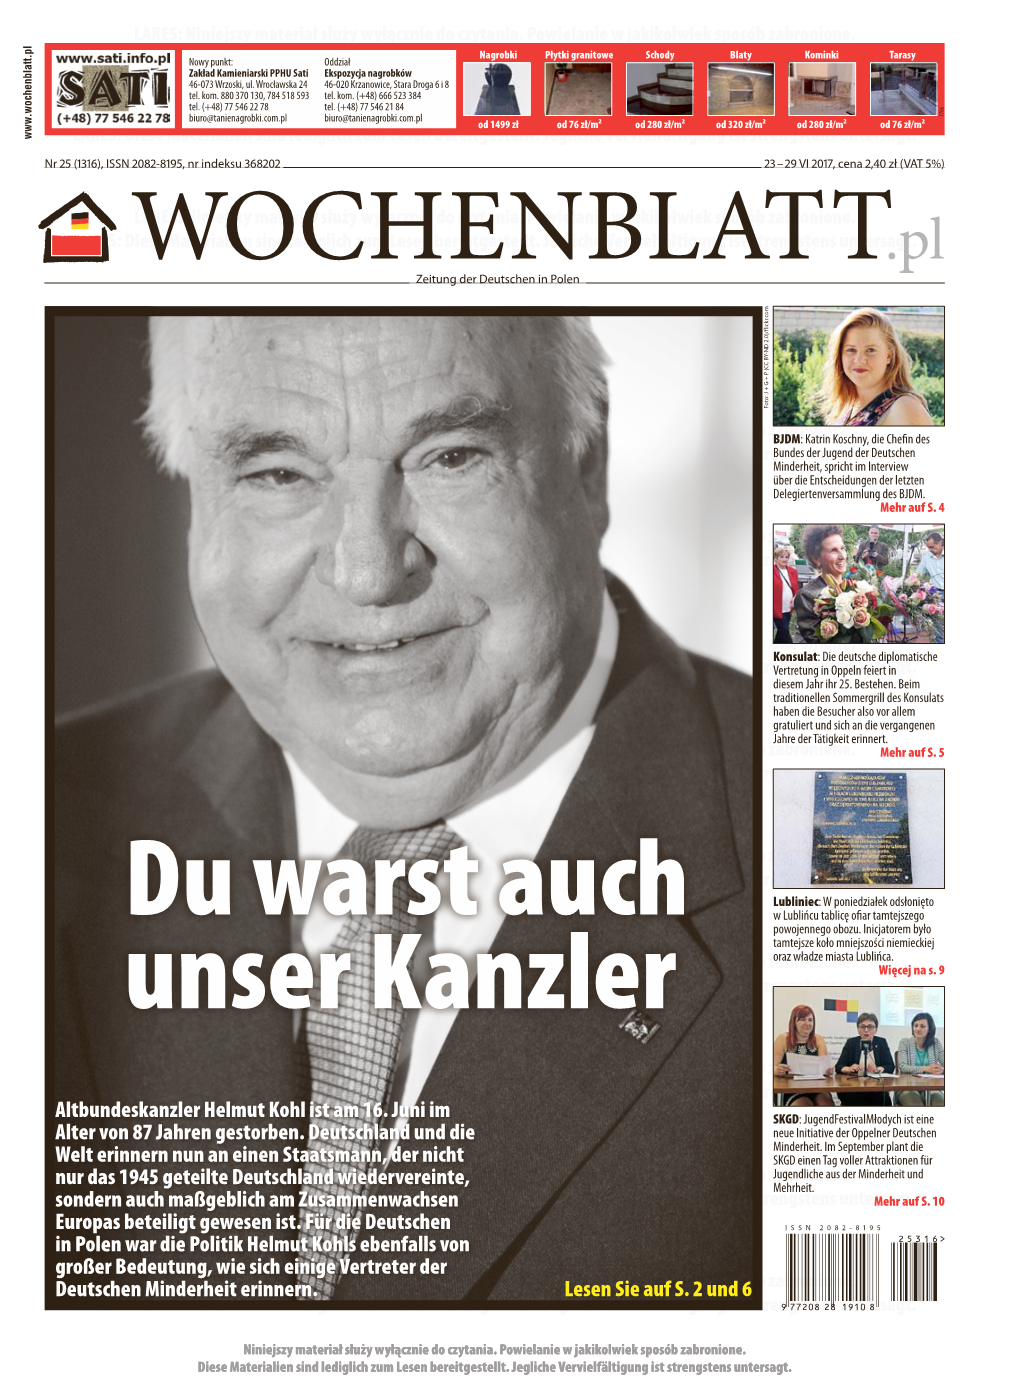 Altbundeskanzler Helmut Kohl Ist Am 16. Juni Im Alter Von 87 Jahren